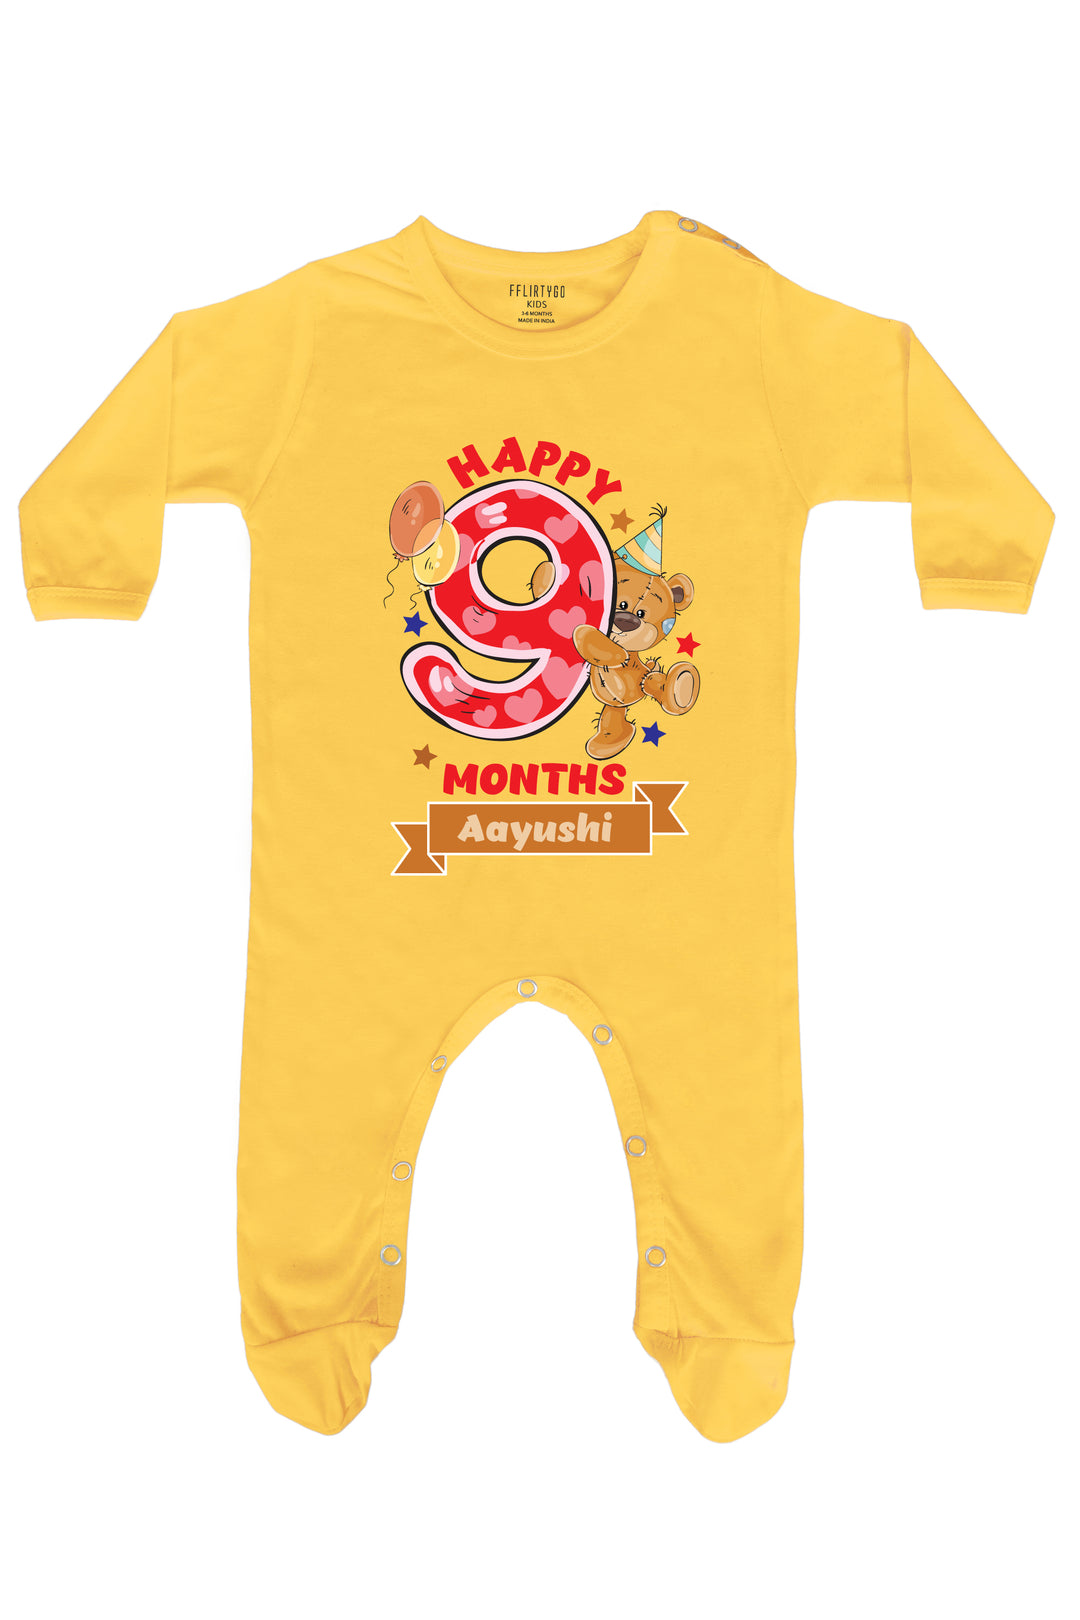 Happy Nine Months Milestone Baby Romper | Onesies w/ Custom Name